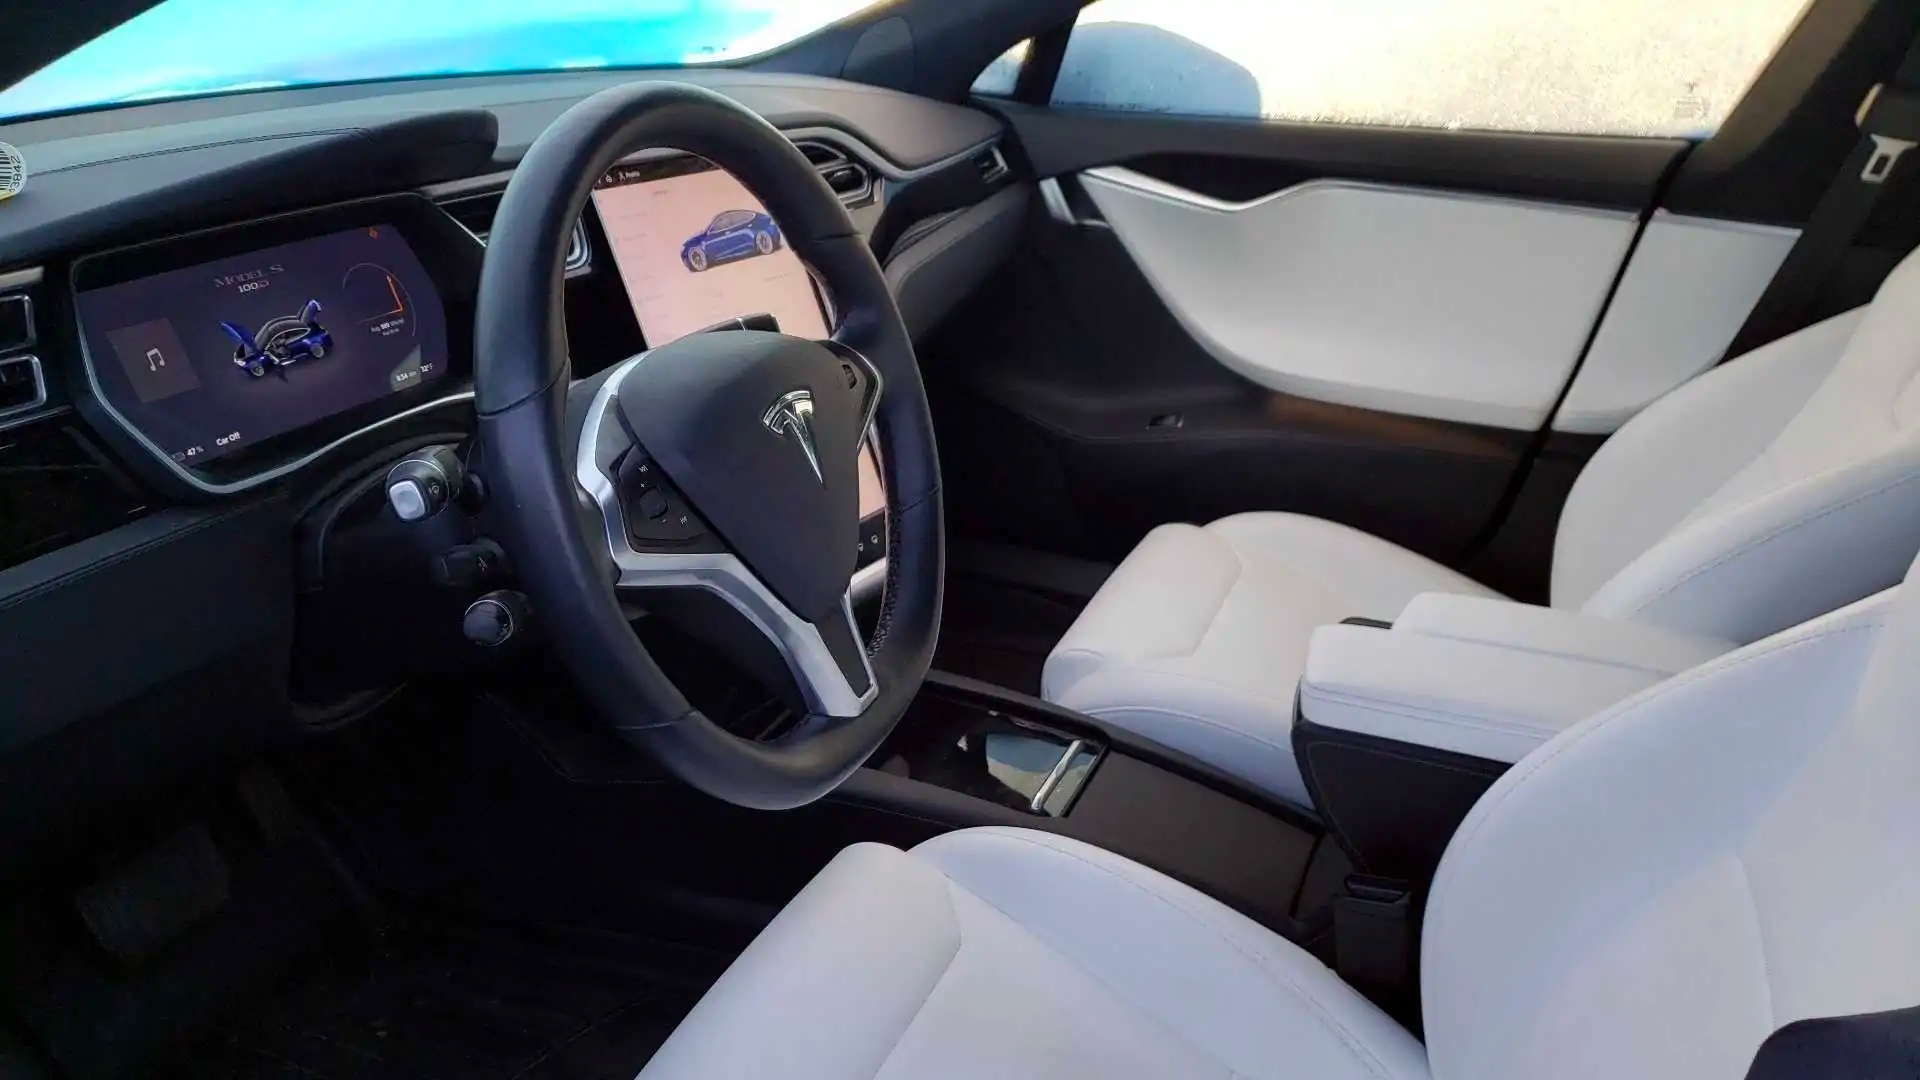 Tesla Model S de segunda mano tiene 166.000 km, y aun así se ha por más de lo habitual - Actualidad - y Eléctricos | Coches eléctricos, híbridos enchufables